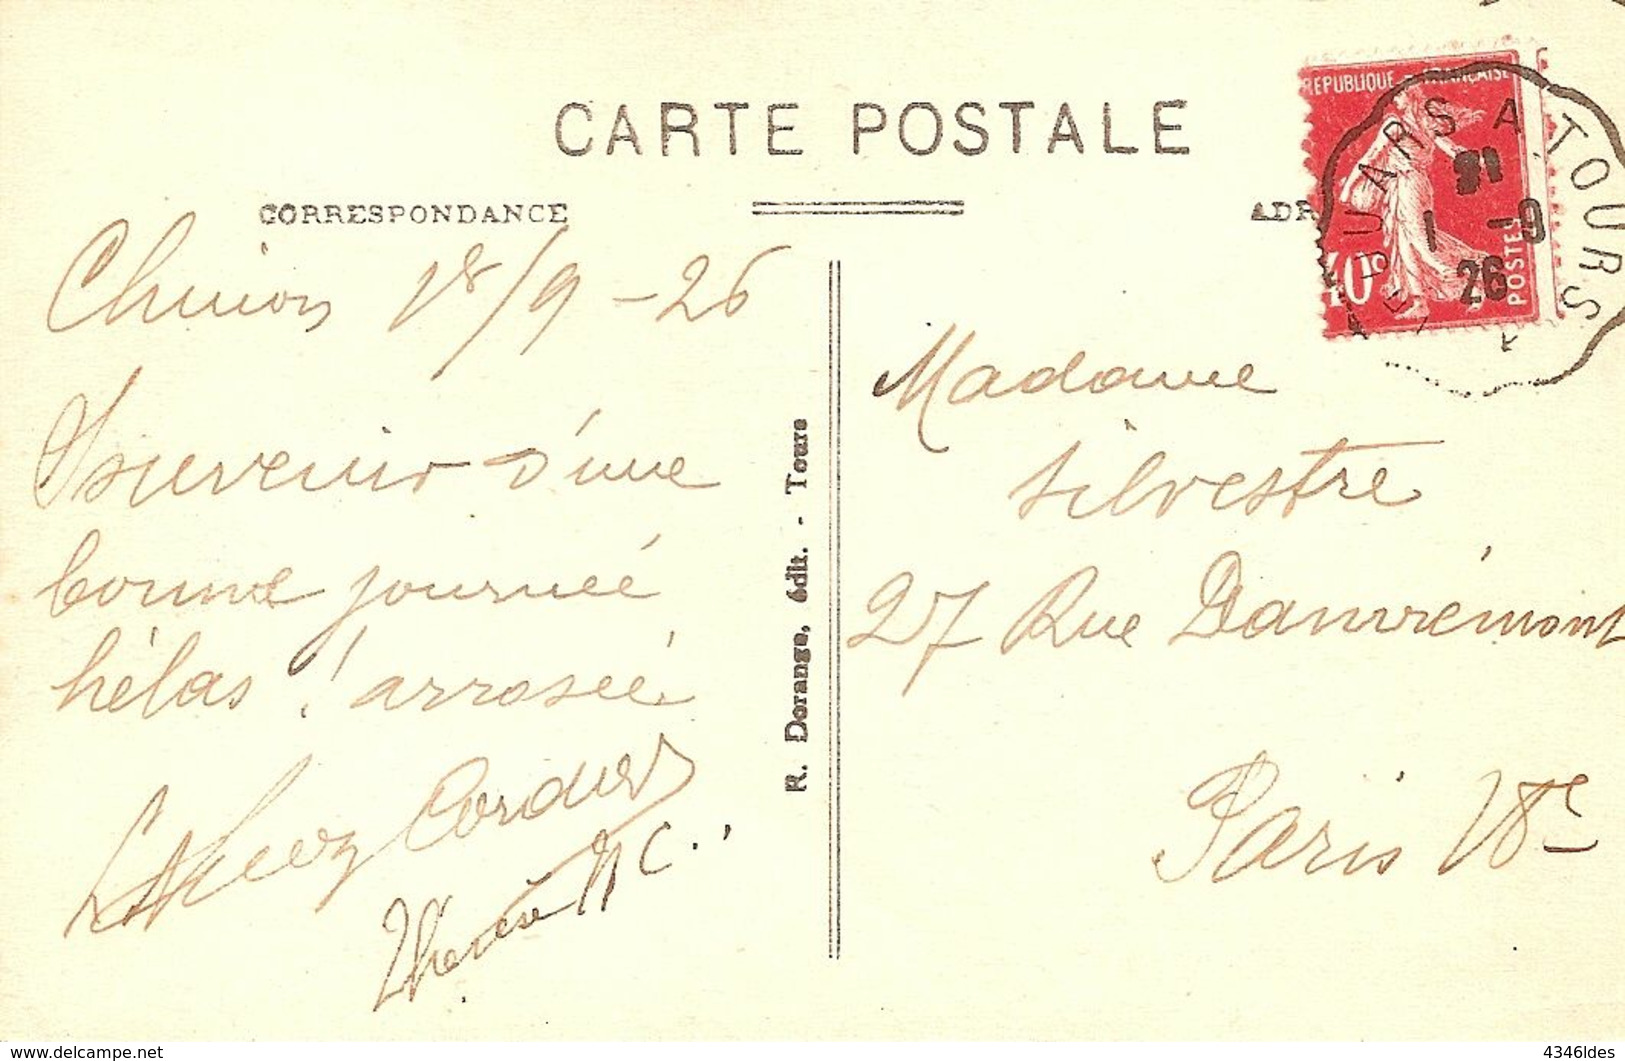 Semeuse N° 194. Variété Piquage à Cheval. - Lettres & Documents